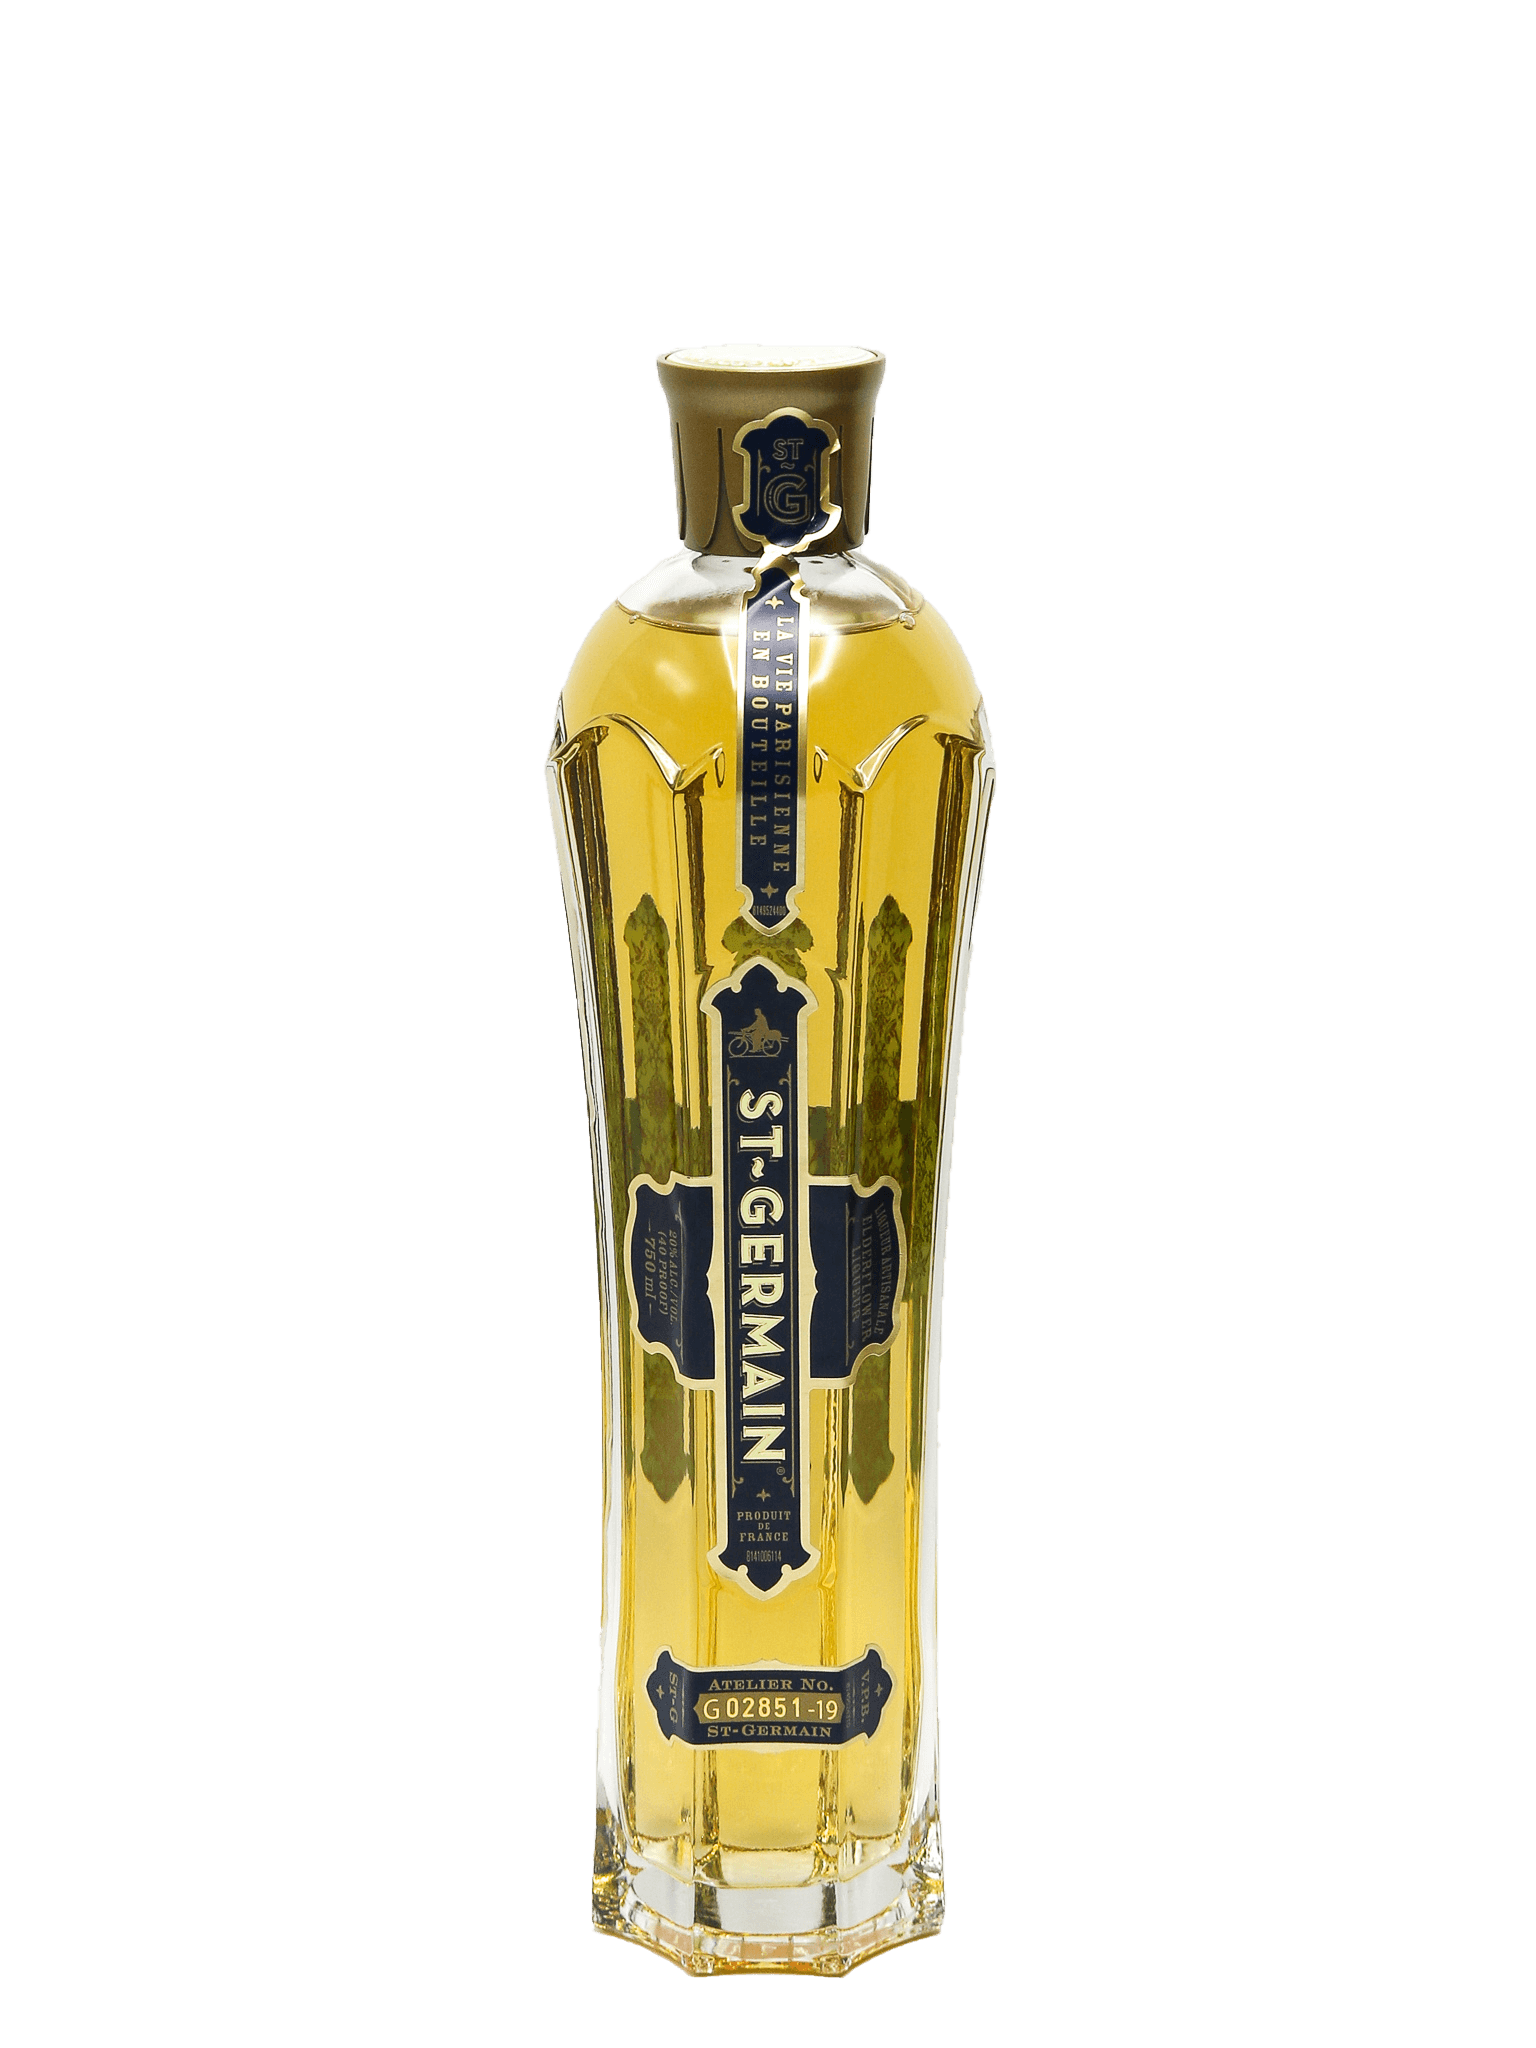 ST GERMAIN ELDERFLOWER LIQUEUR 750ML - Cork 'N' Bottle